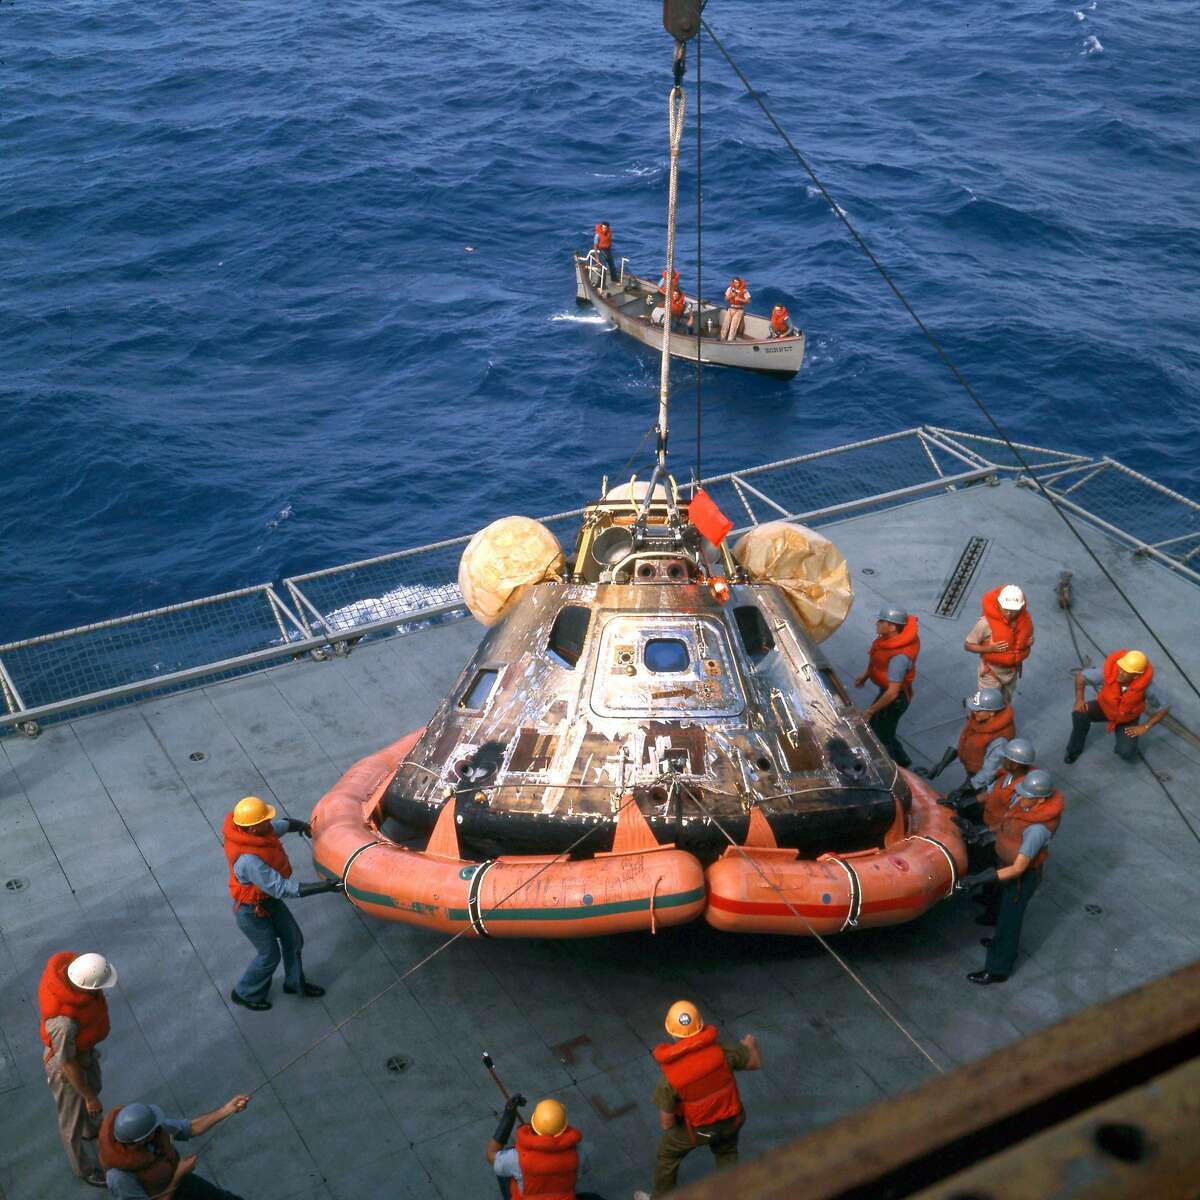 阿波罗11号指挥舱,哥伦比亚,悬挂在大黄蜂号航空母舰在太平洋地区复苏,夏威夷西南约812海里,7月24日,1969年。